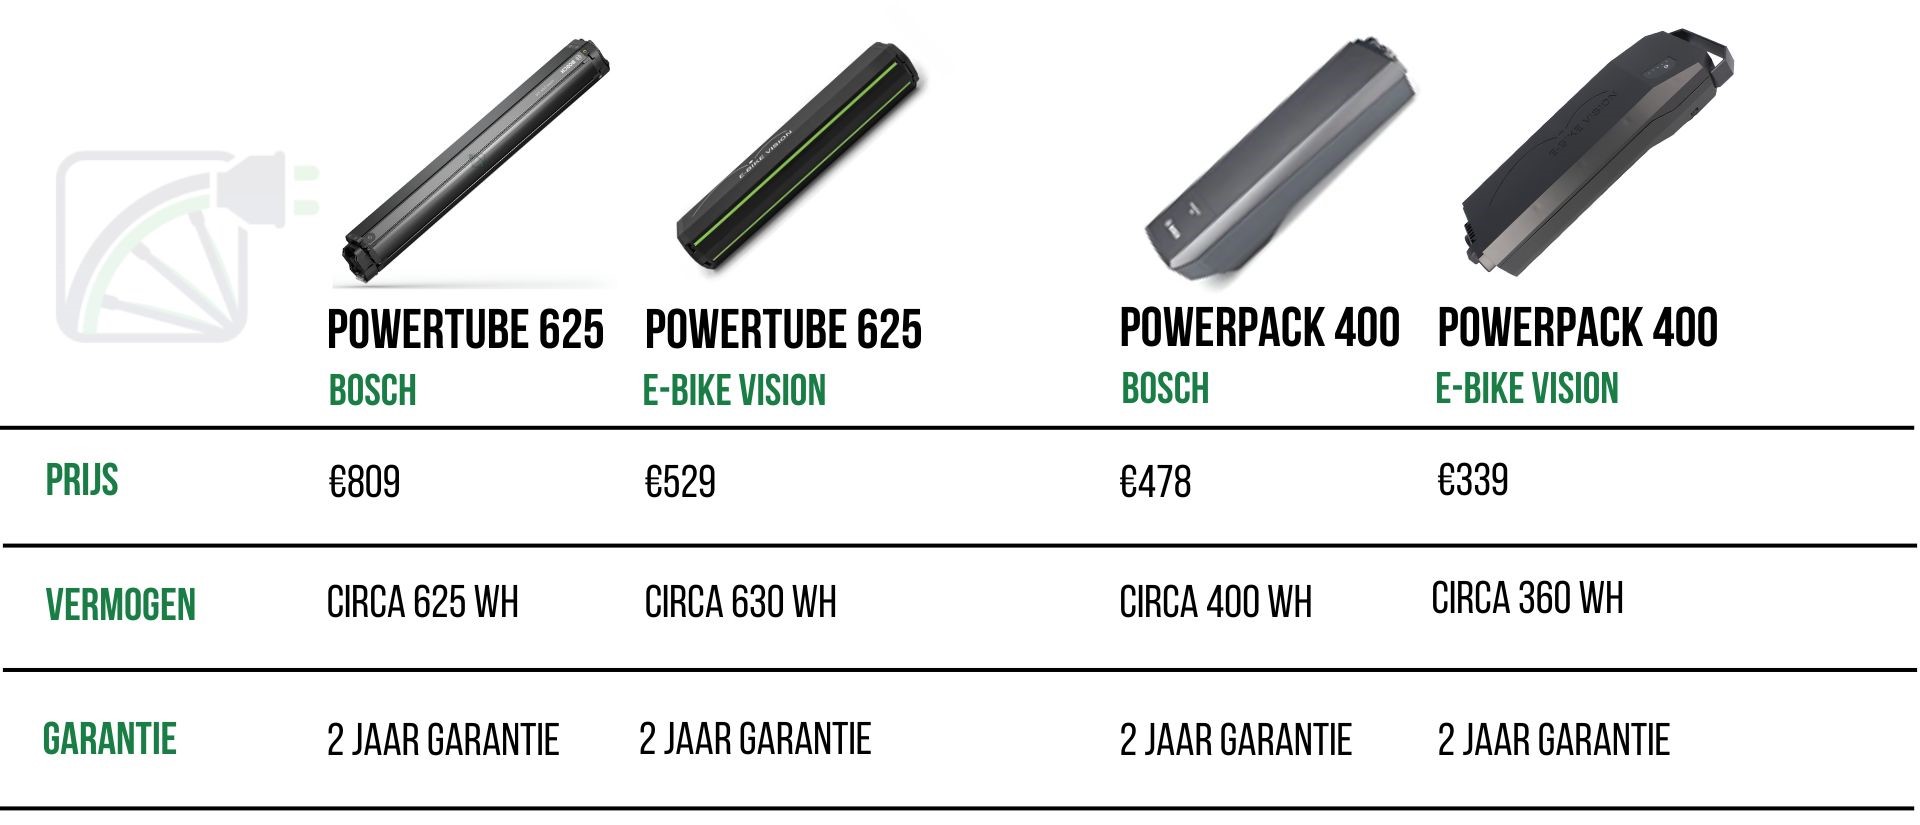 tabla comparativa entre bosch powertube 625, e-bike vision powertube 625, bosch powerpack 400 y e-bike vision powerpack 400 en los siguientes puntos: precio, potencia y garantía.